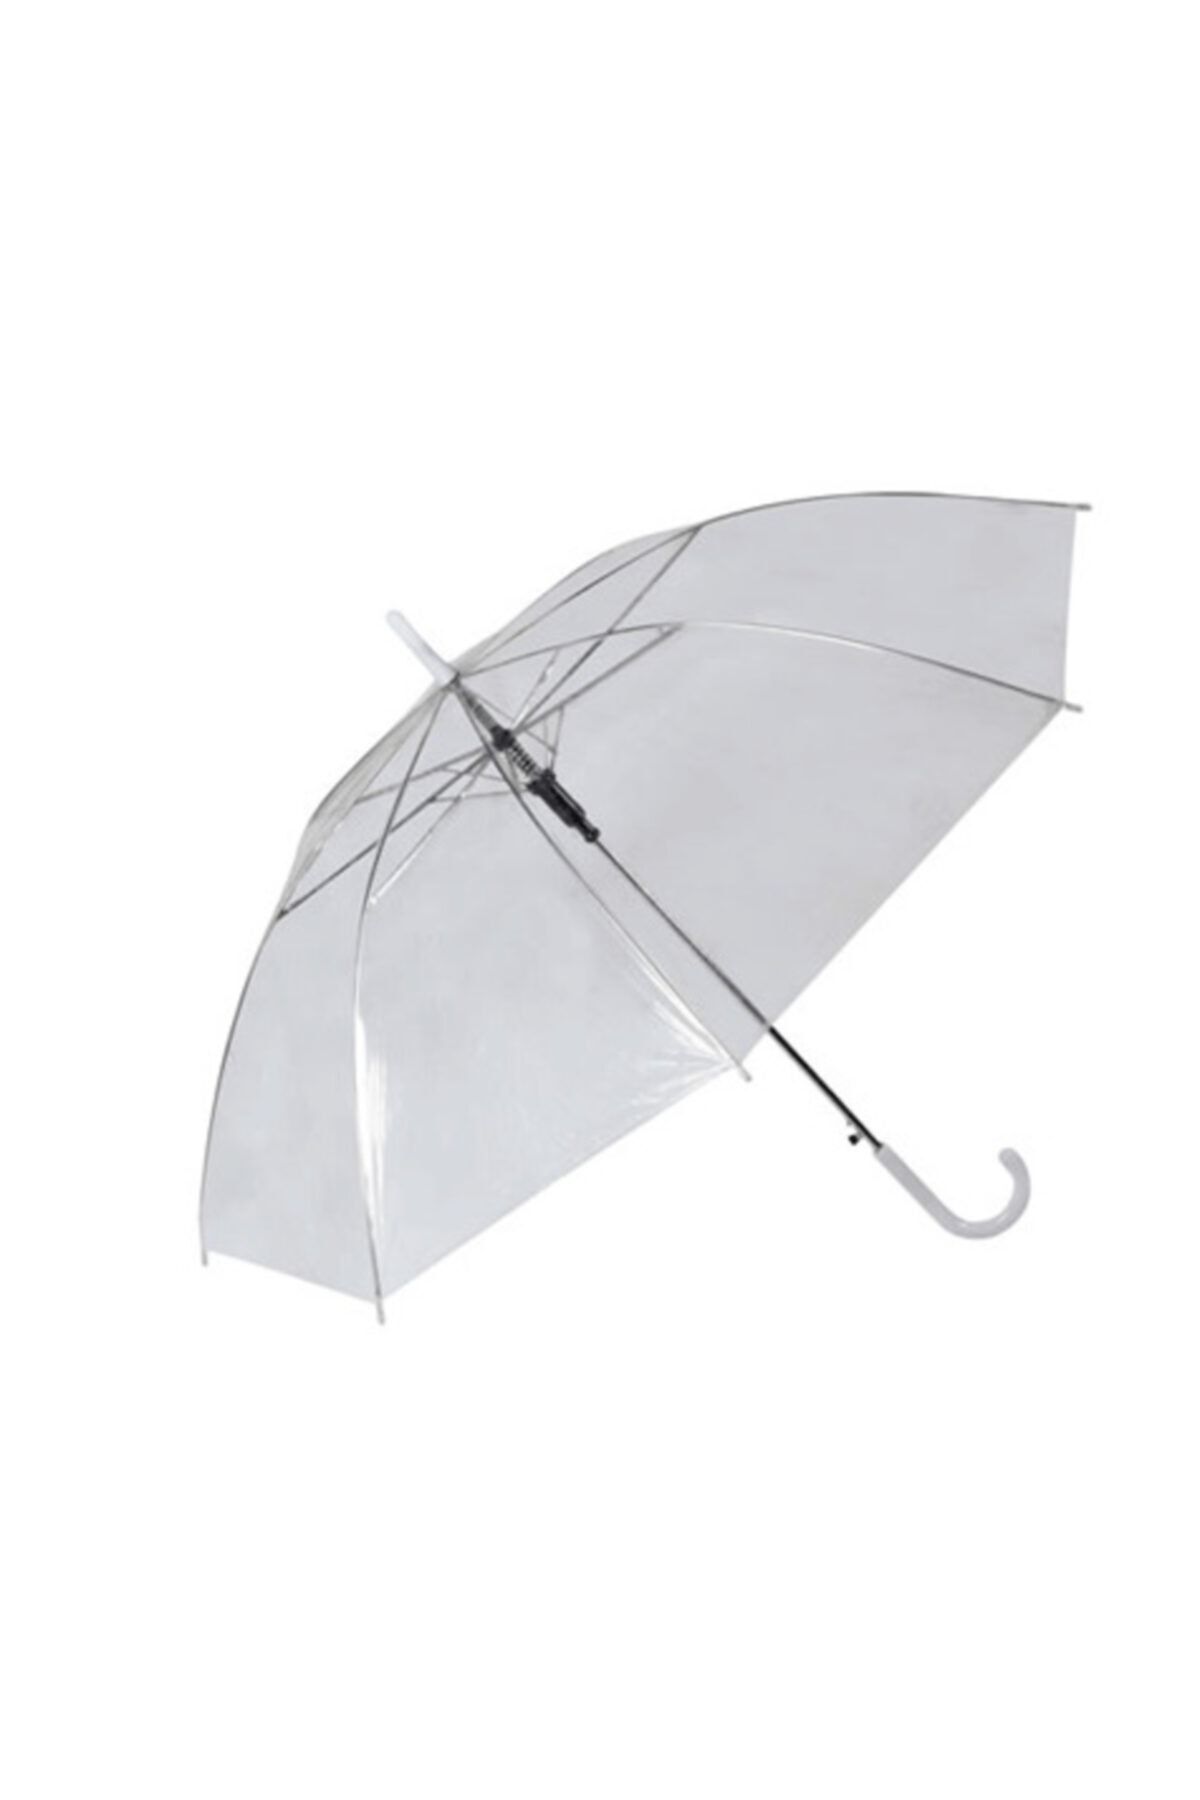 FırsatVar Bayanlar Için Şeffaf Yağmurluk Tam Otomatik Şemsiyes